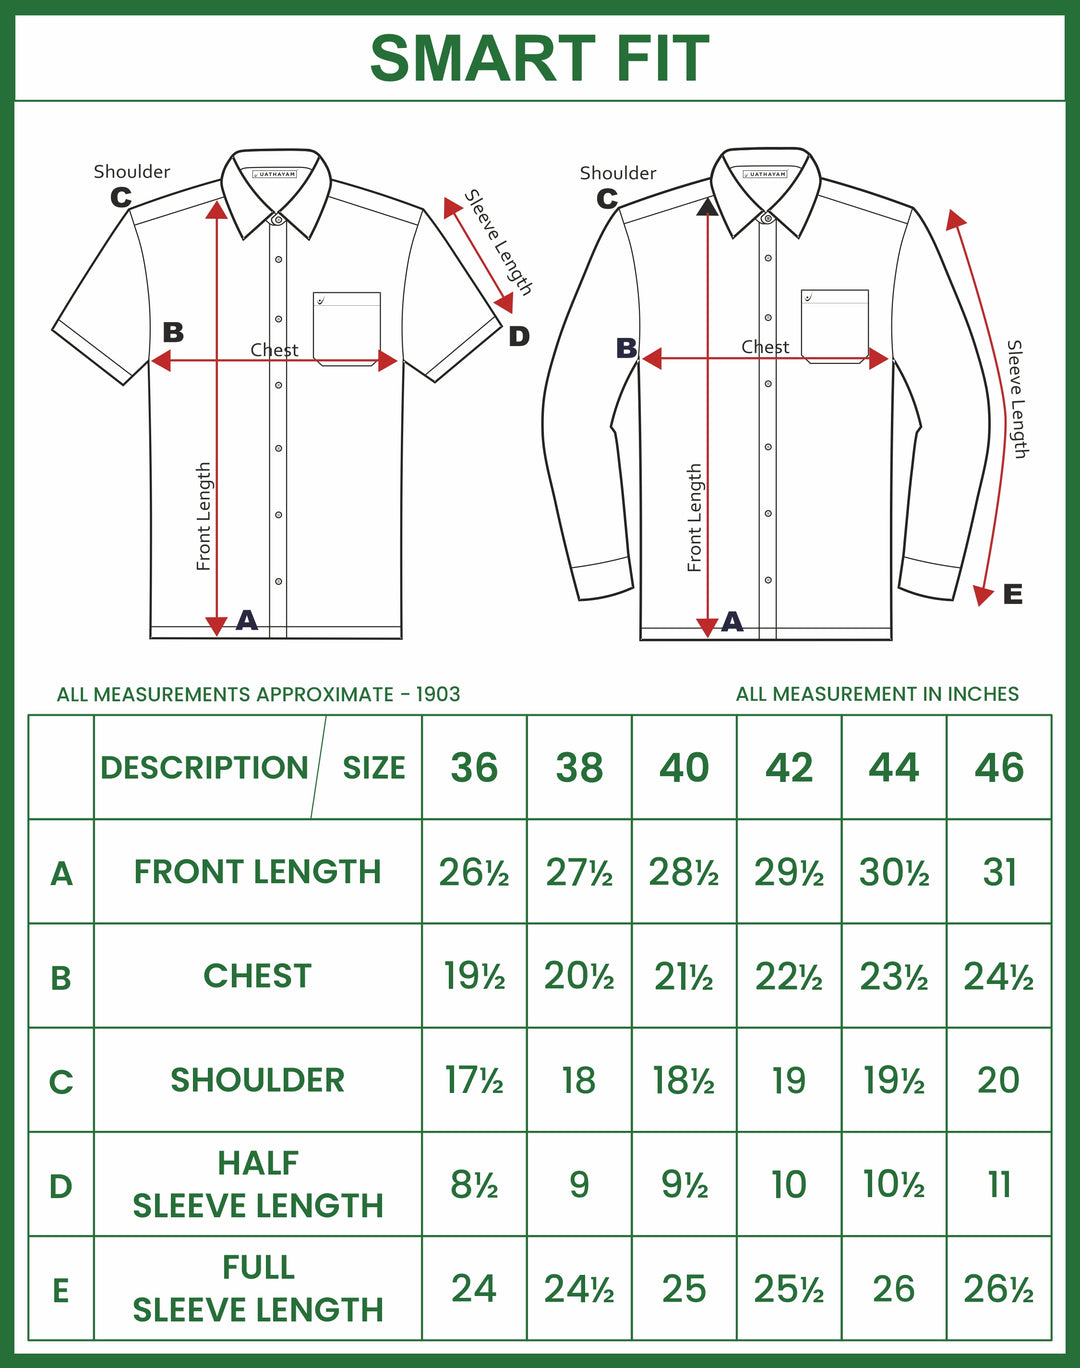 UATHAYAM Varna Matching Dhoti & Shirt Set Half Sleeves Pale Green-11012